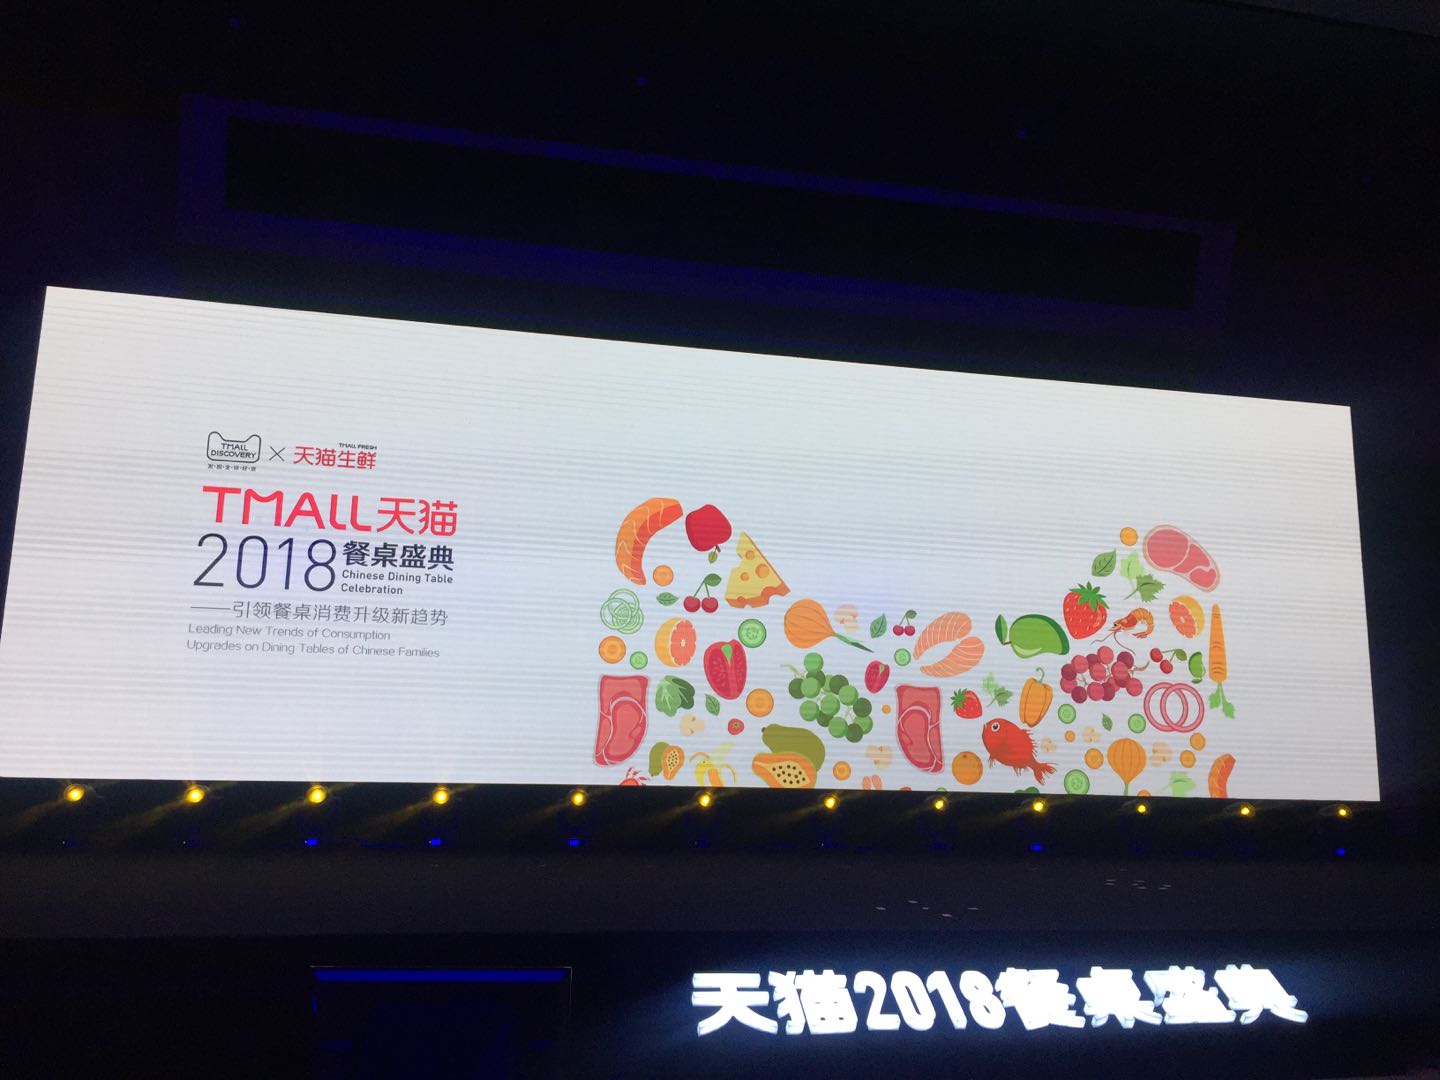 天猫2018餐桌盛典 引领中国餐桌消费新升级